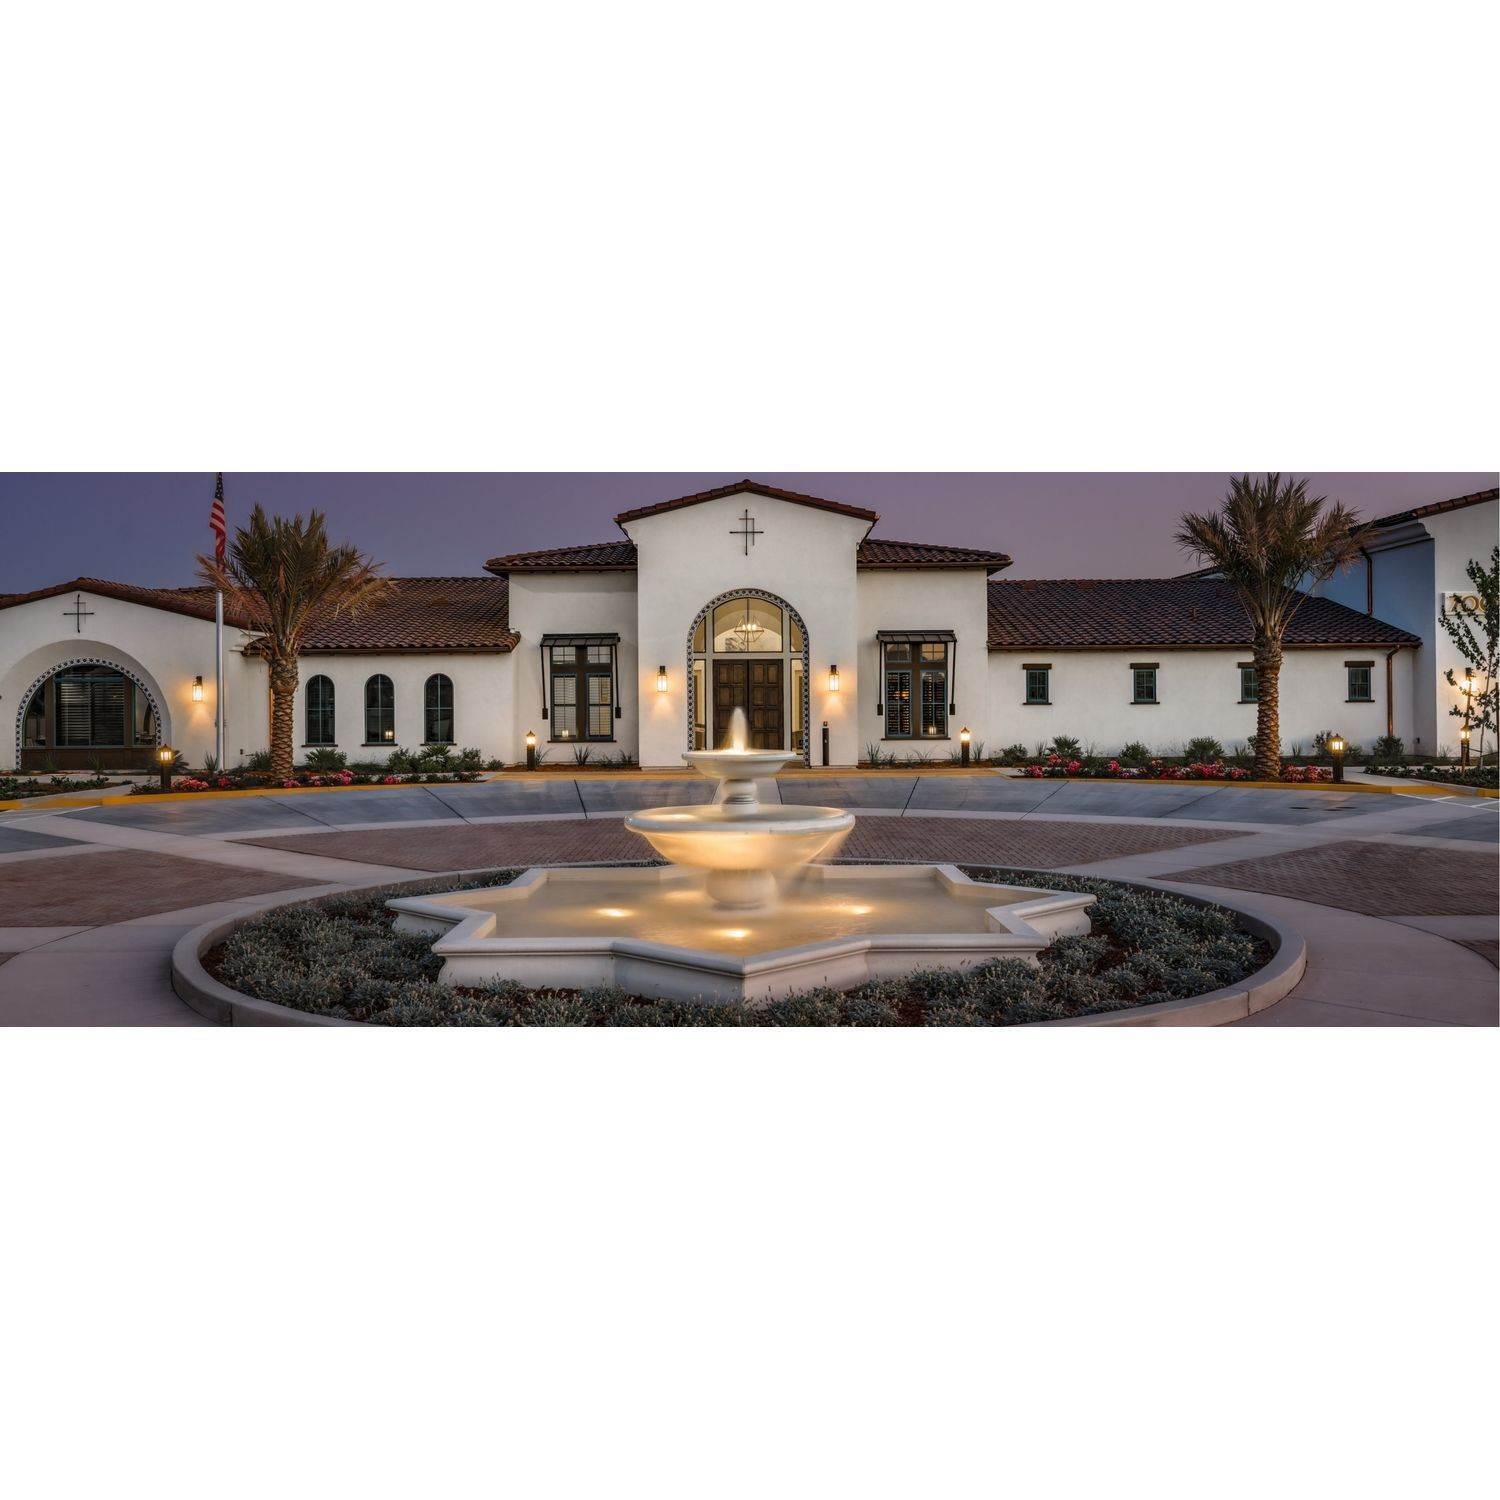 14. Mosaic Active Adult 55+ здание в 4975 Del Mar Drive, El Dorado Hills, CA 95762